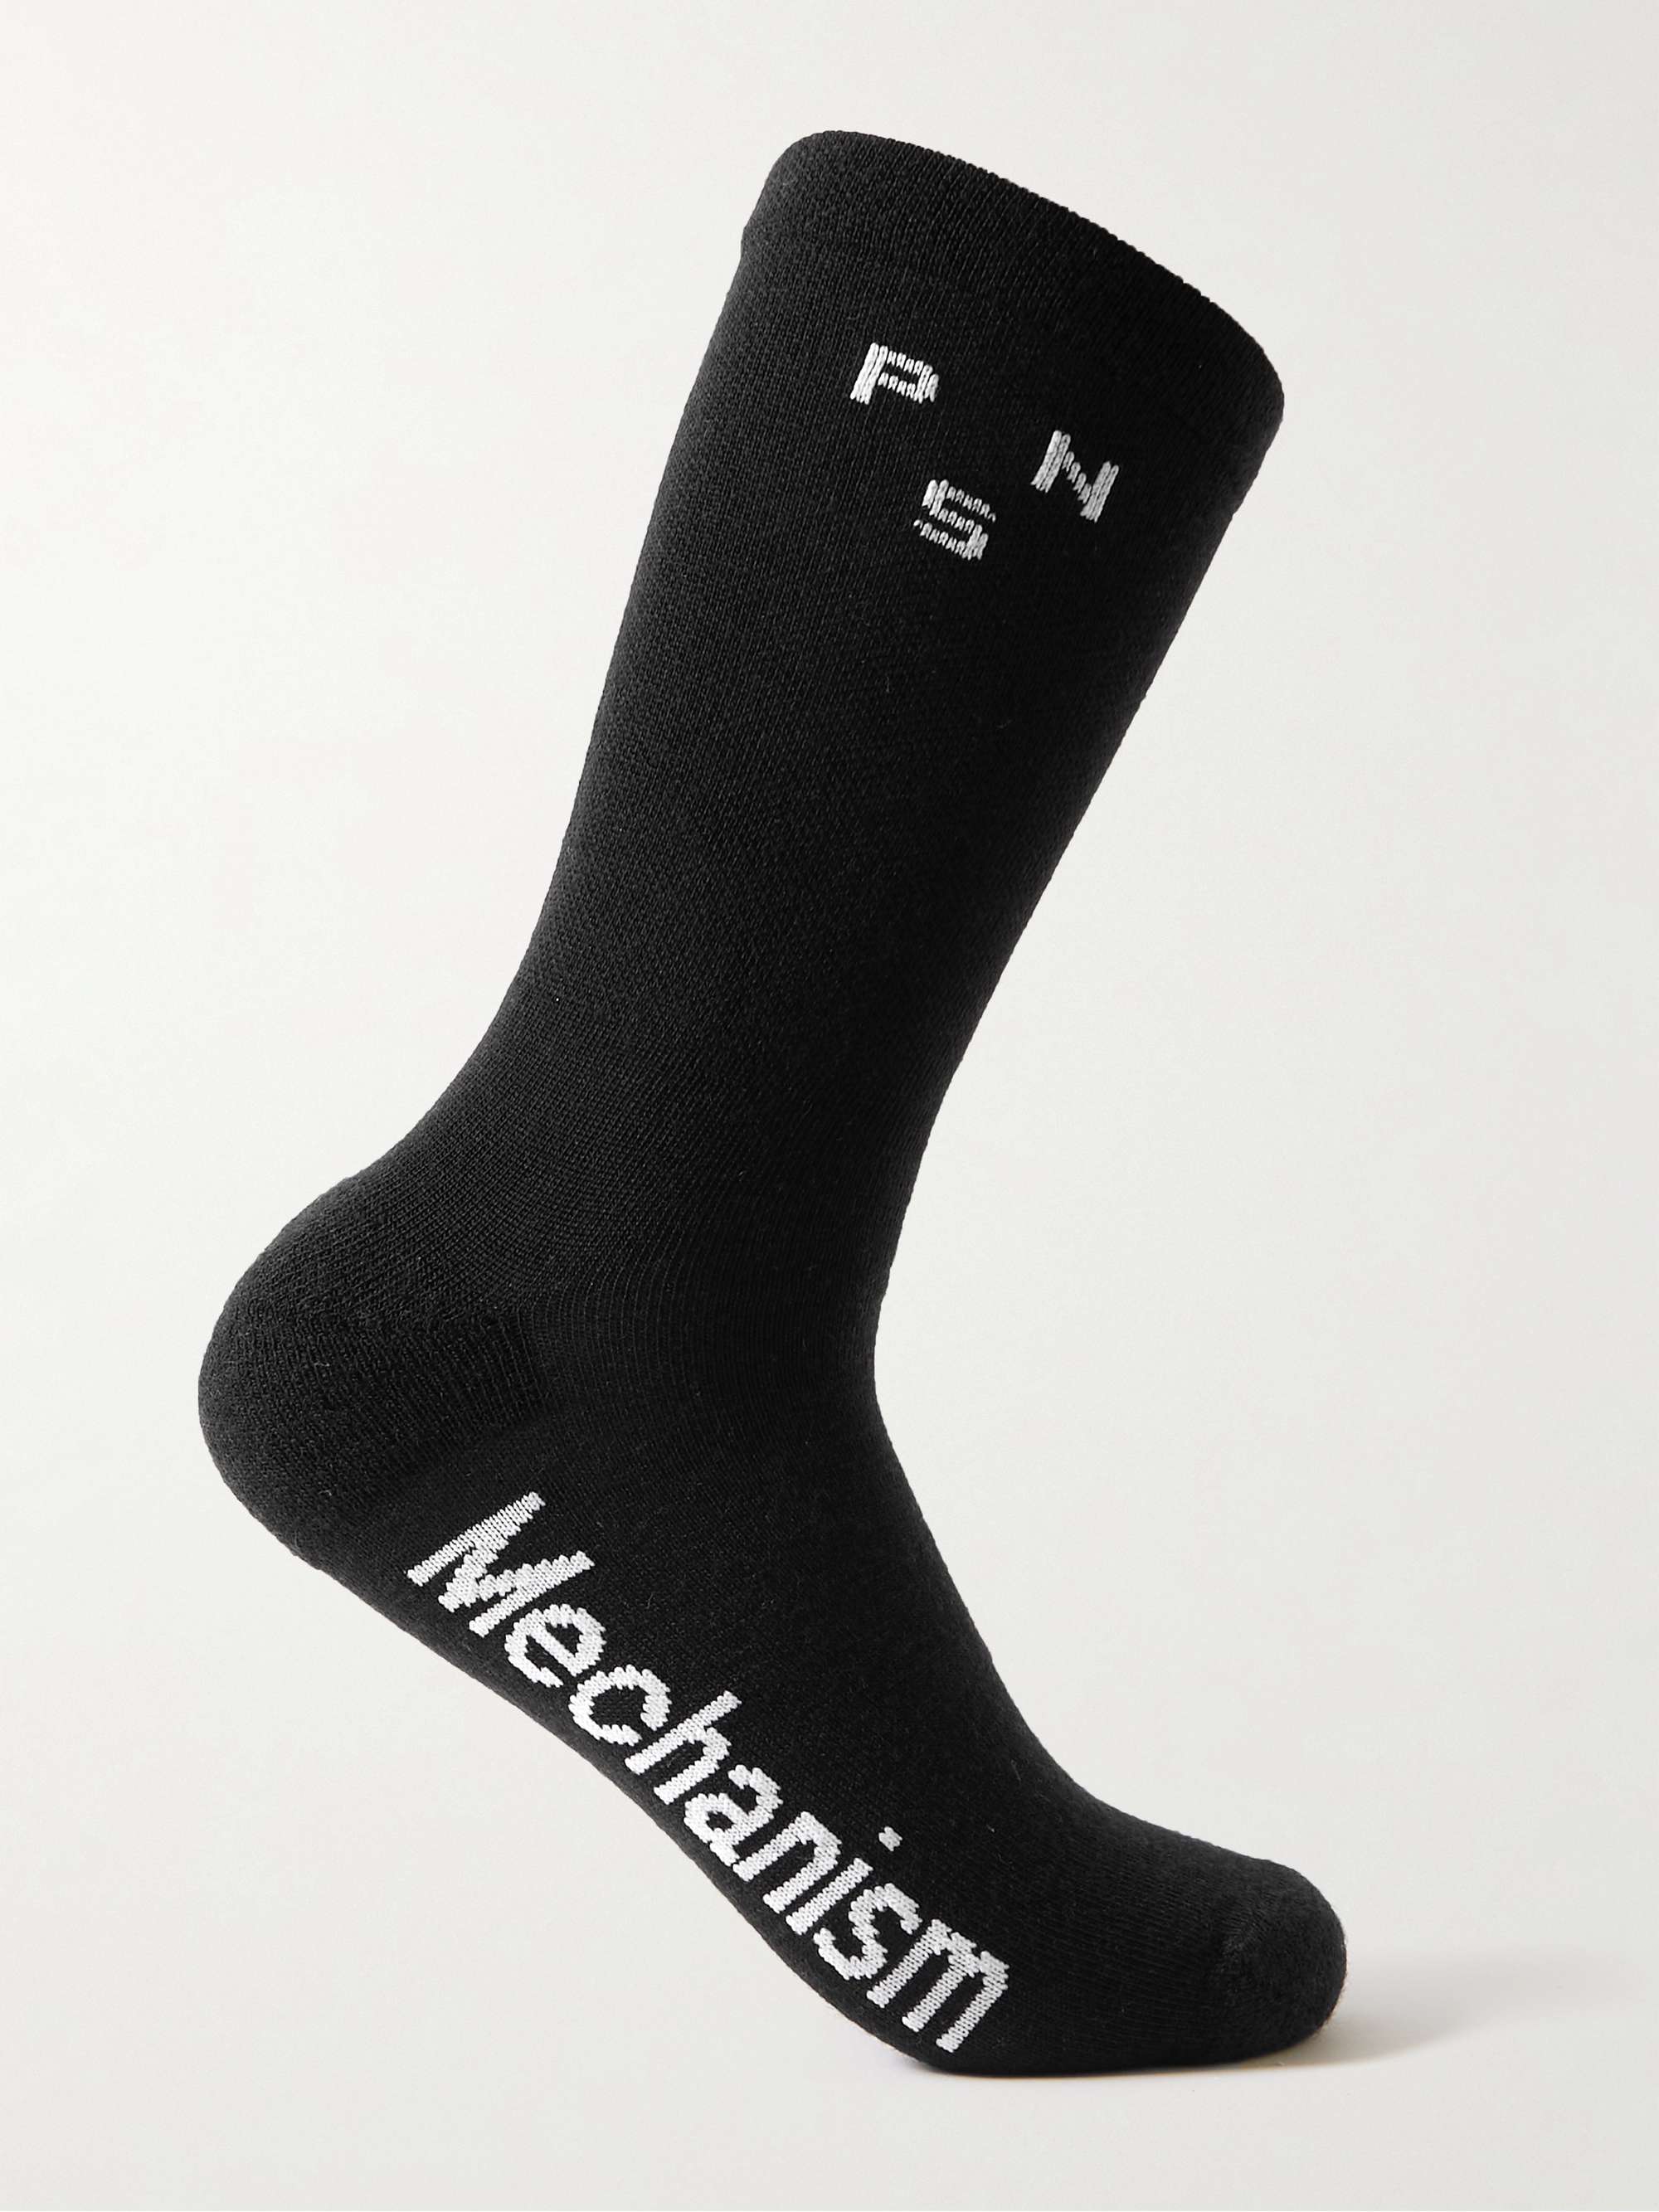 PAS NORMAL STUDIOS Mechanism Thermal Merino Wool-Blend Cycling Socks